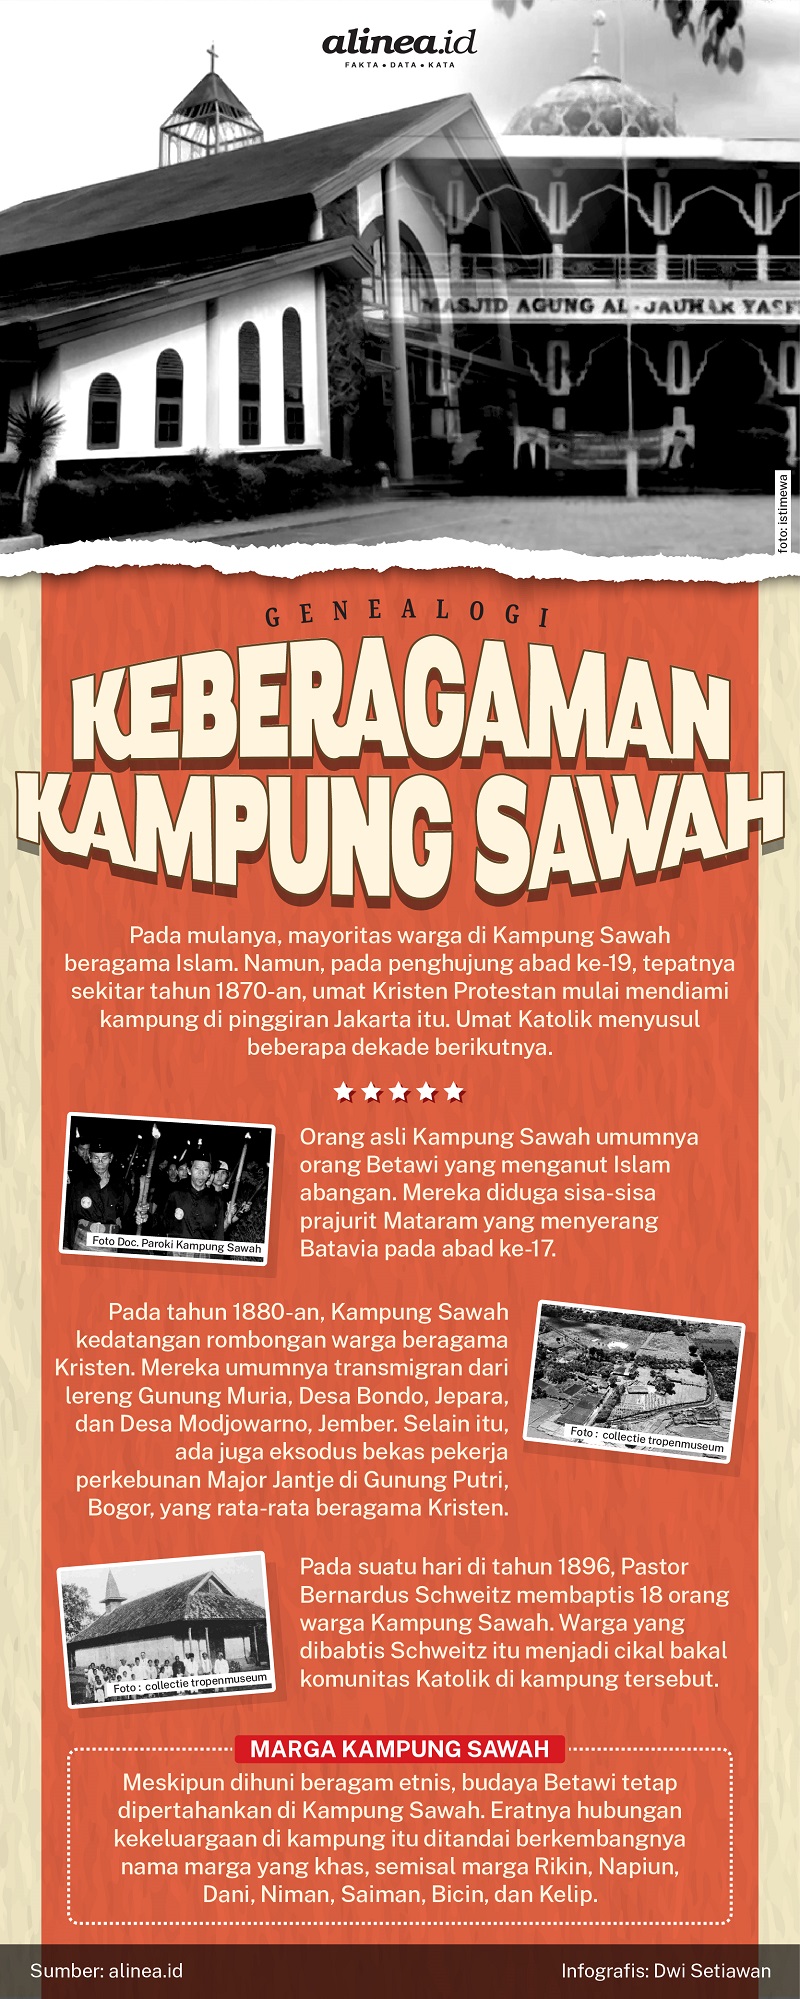 Infografik Kampung Sawah. Alinea.id/Dwi Setiawan